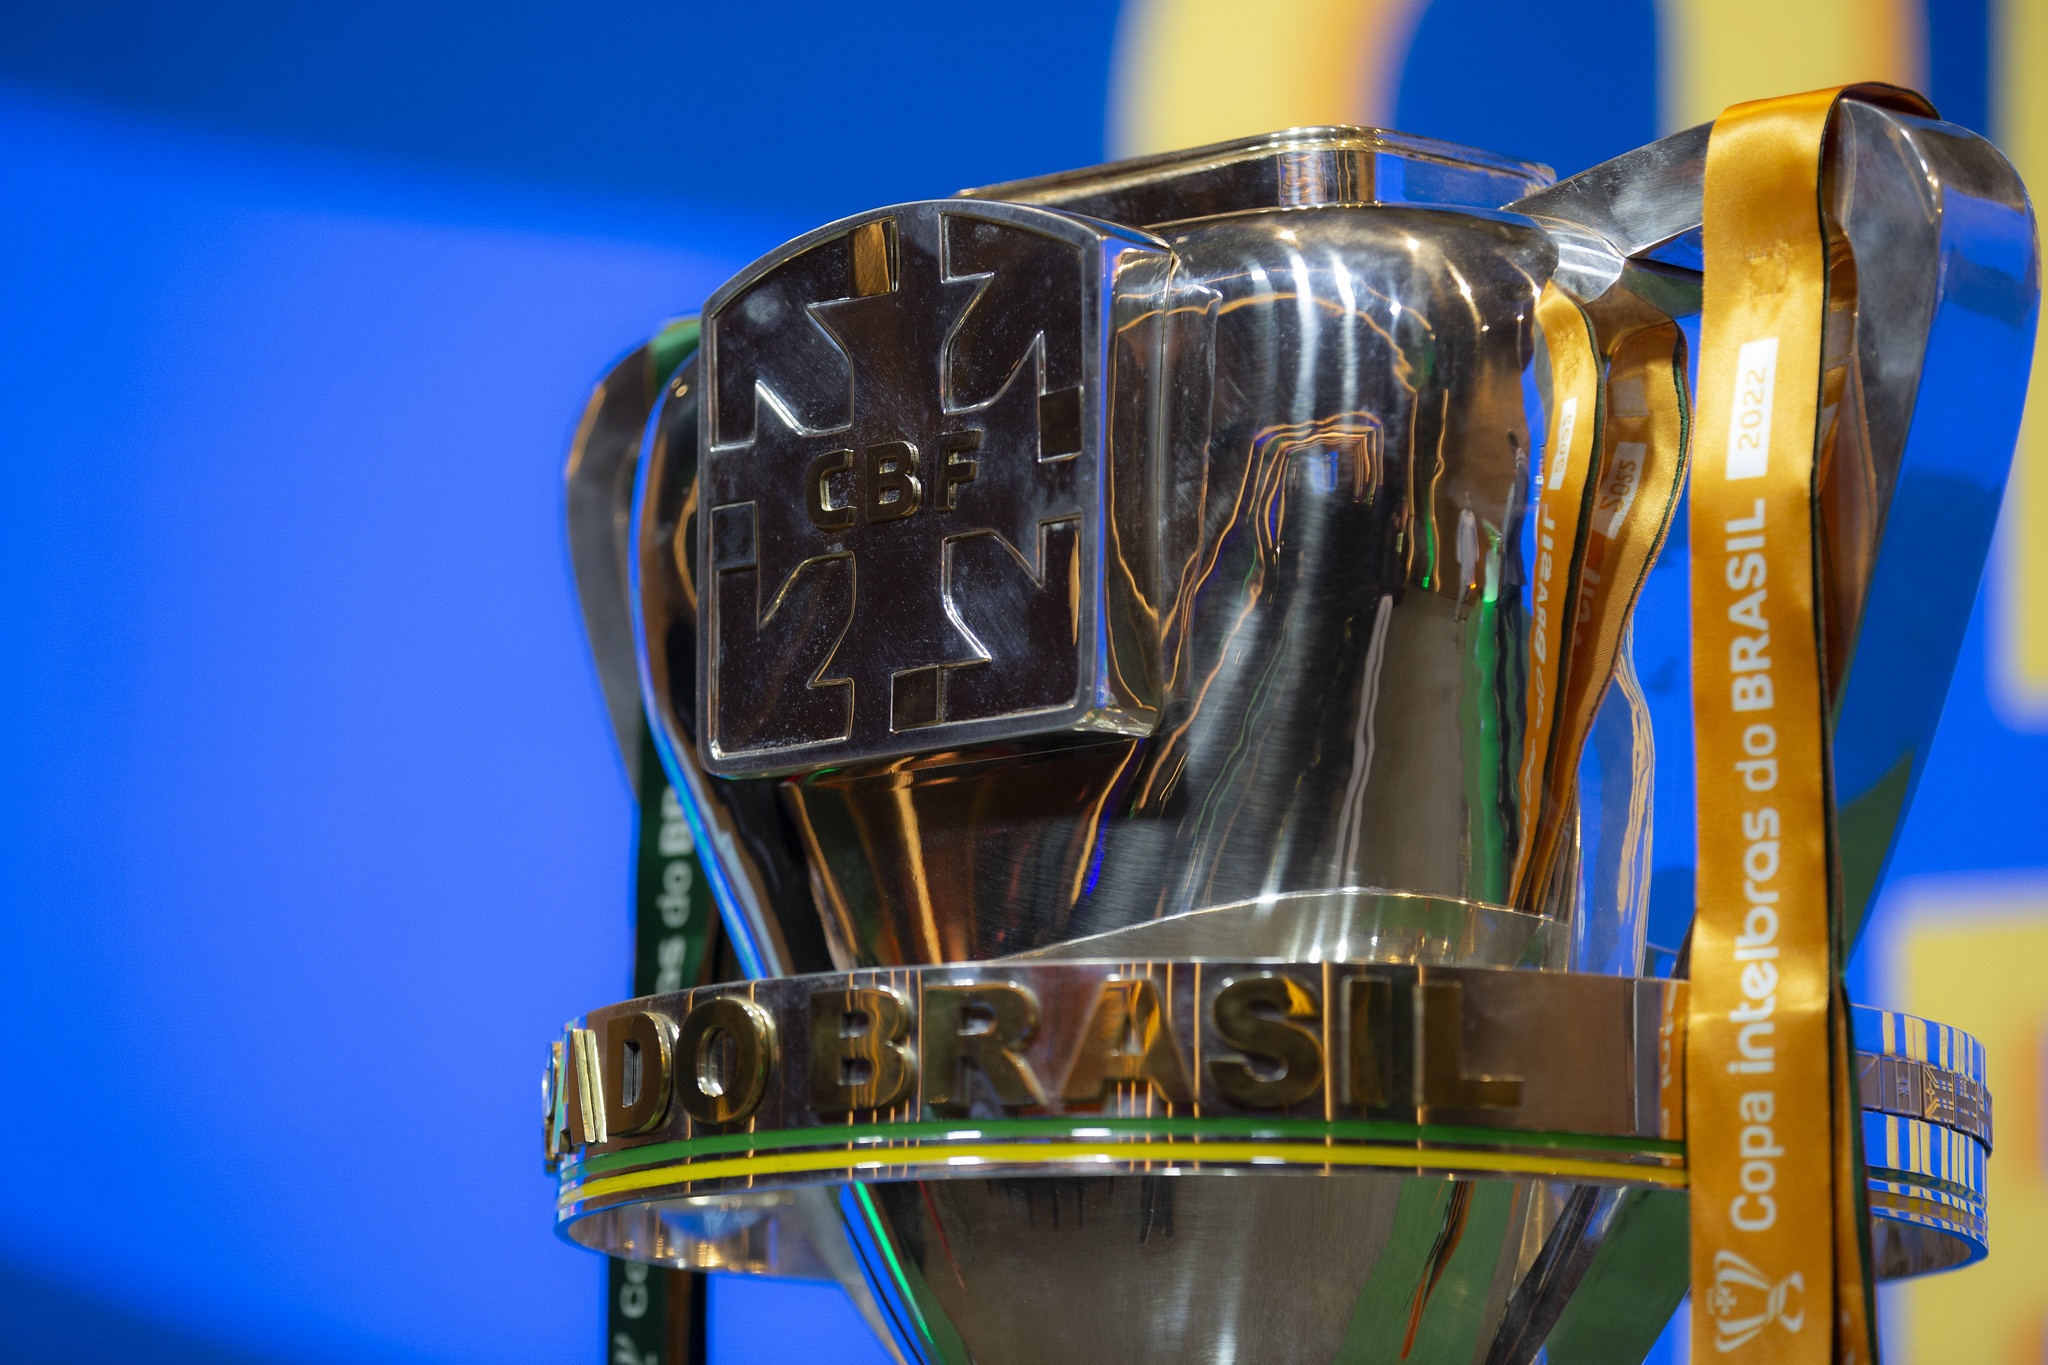 Definidos os 16 confrontos de ida e volta da 3ª fase da Copa do Brasil